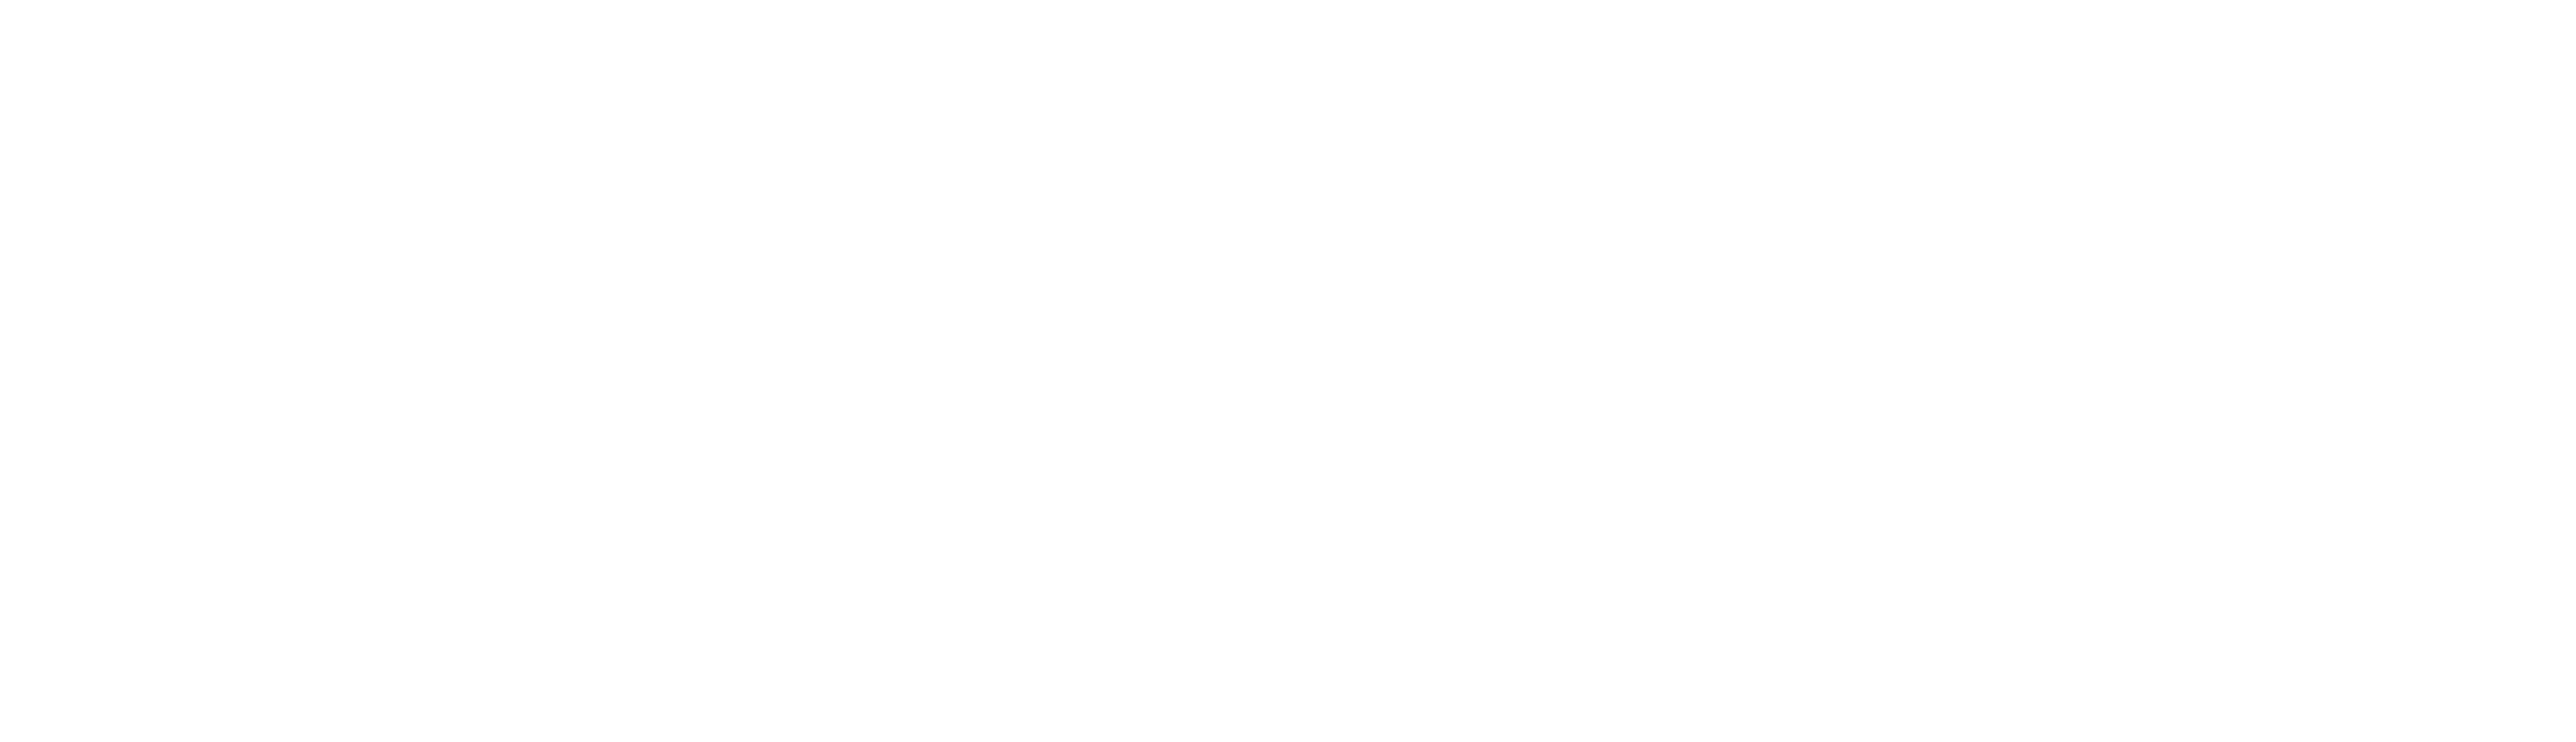 Clazzy Logo